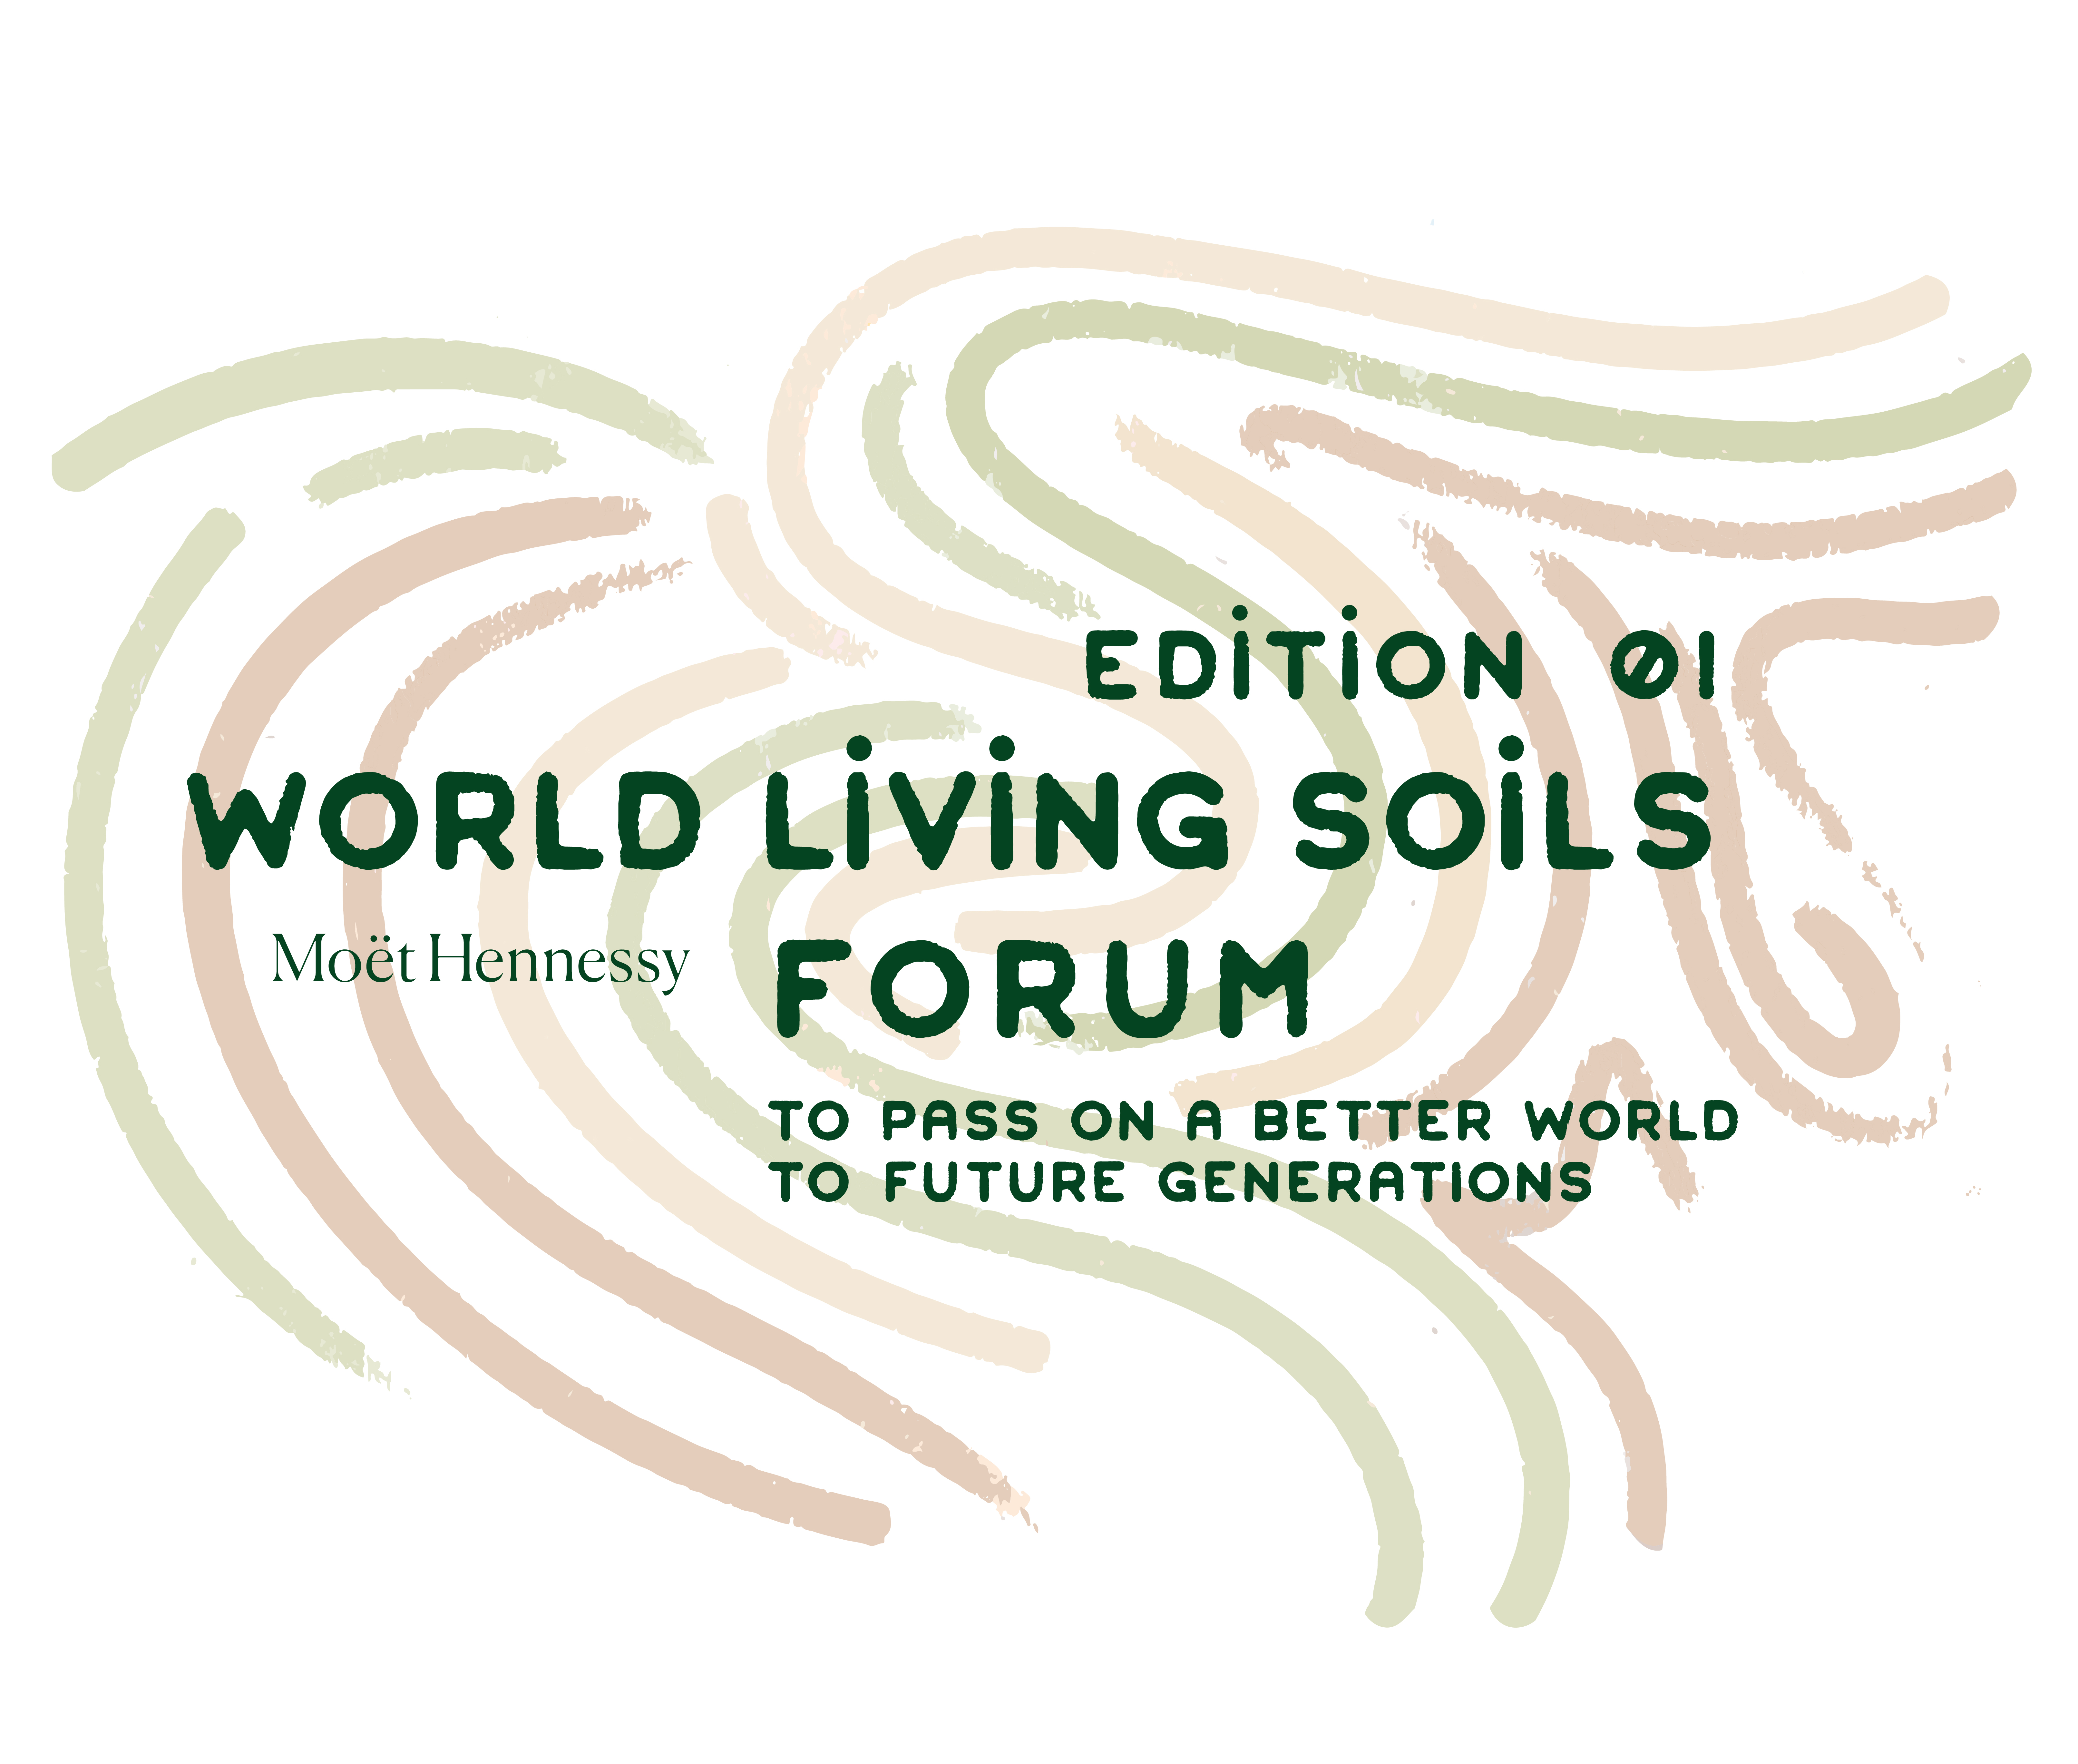 World Living Soils Forum